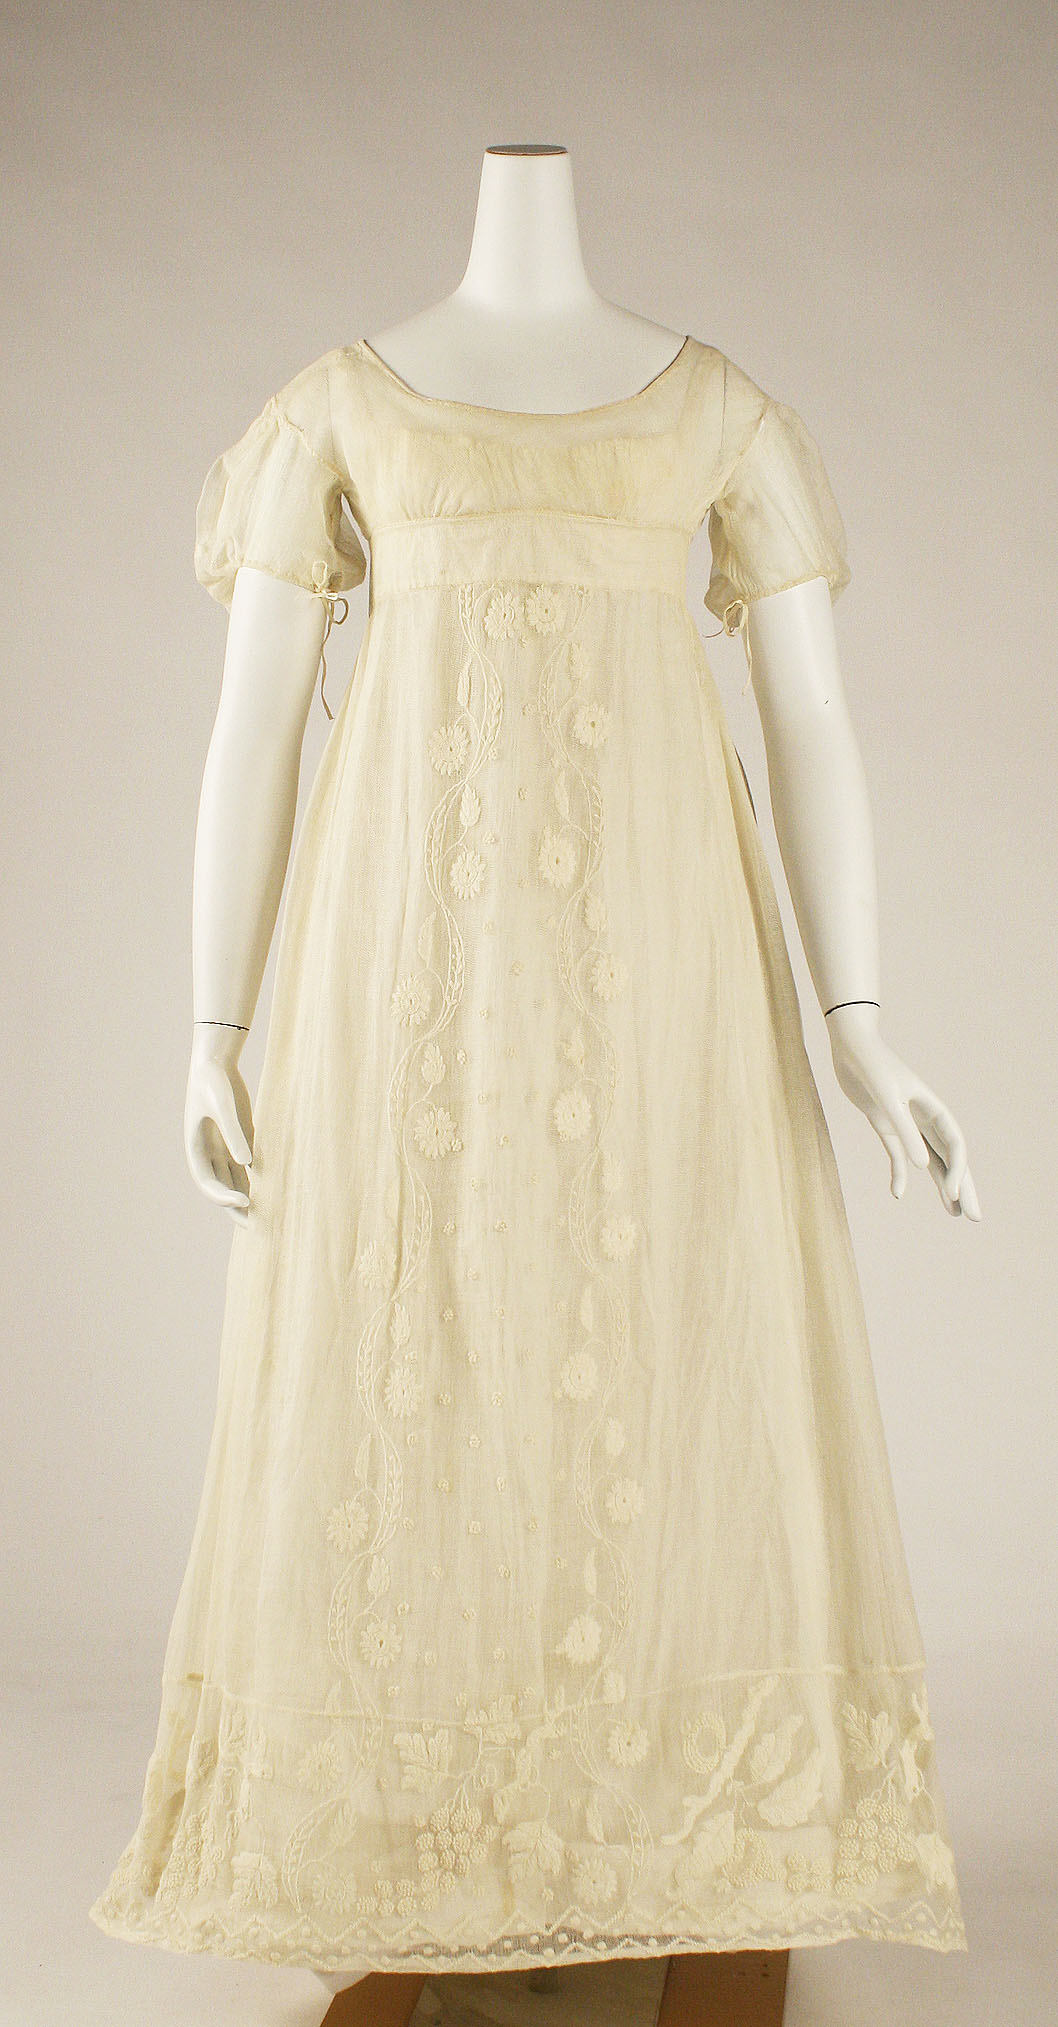 Dress | British | The Metropolitan Museum of Art